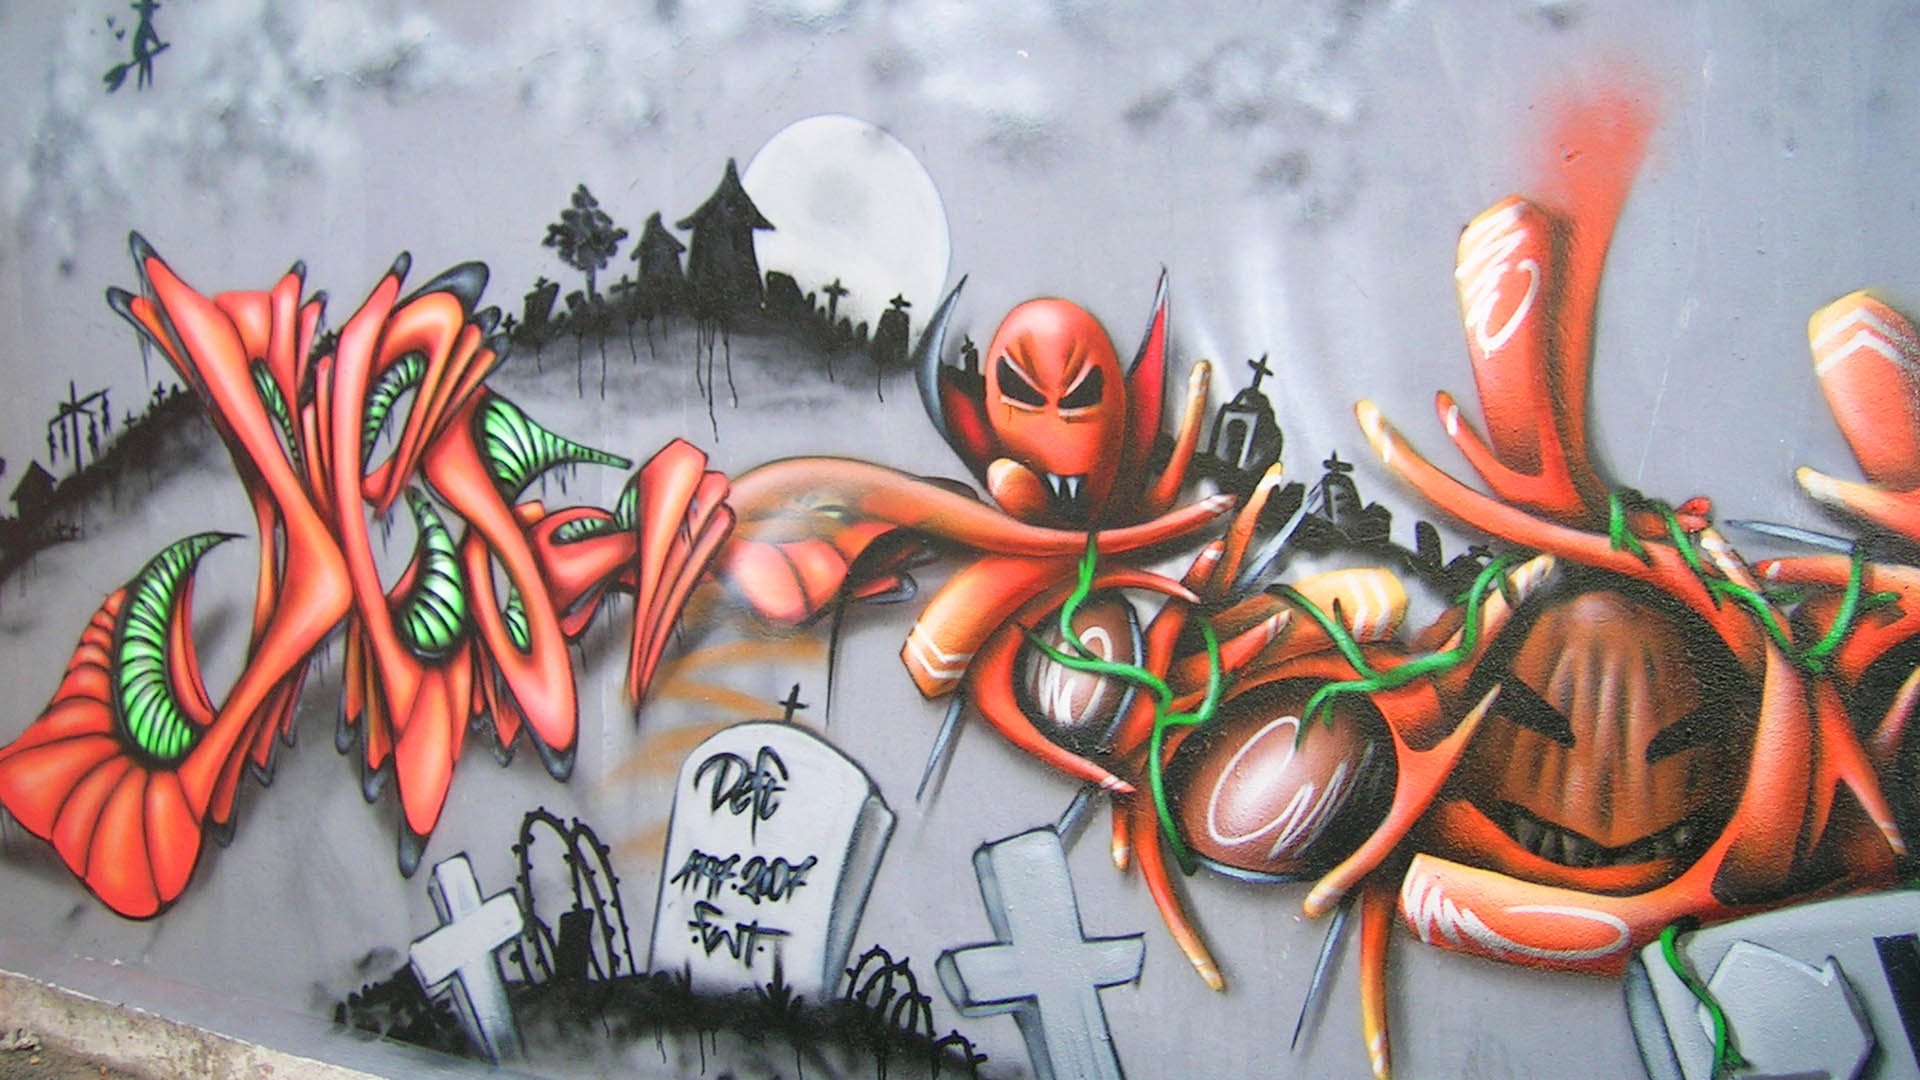 Halloween-graffiti-street-art-deft-insert-coin